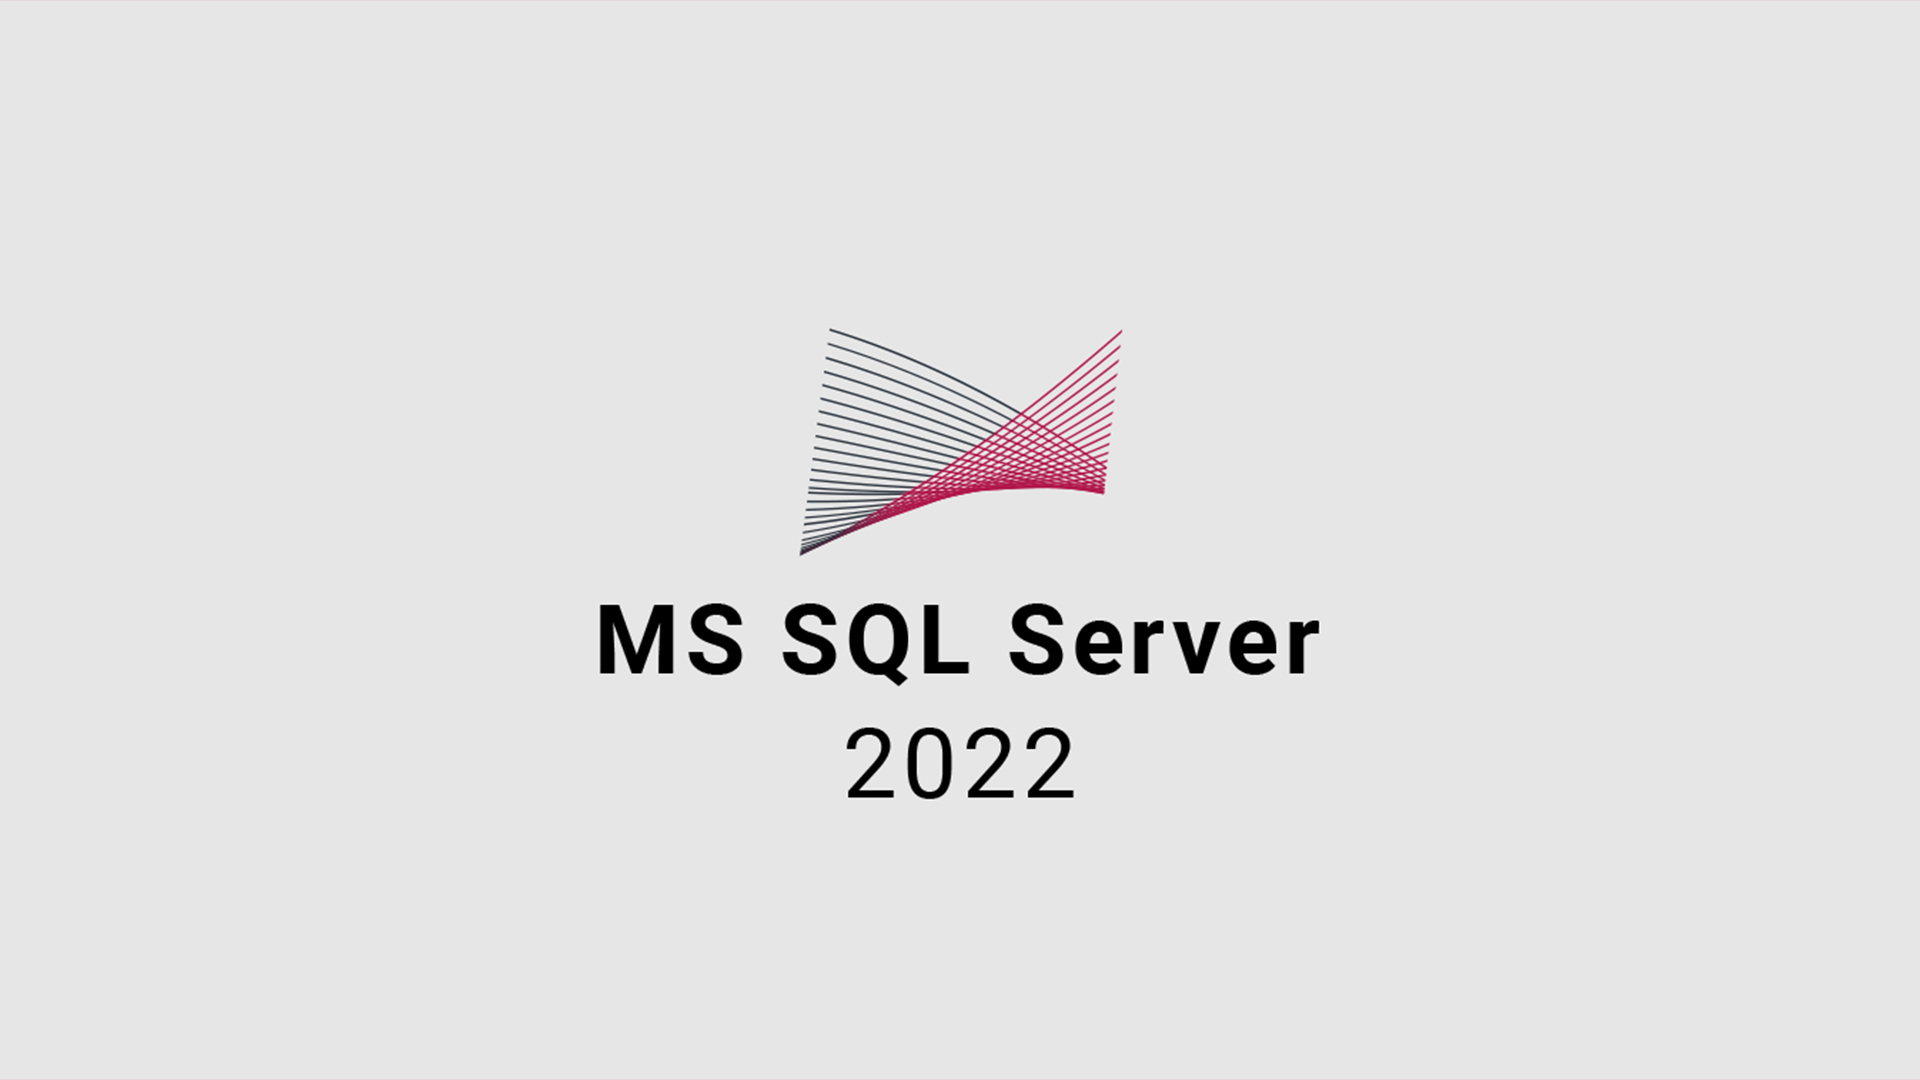 MS SQL Server 2022 CD Key, 111.87$